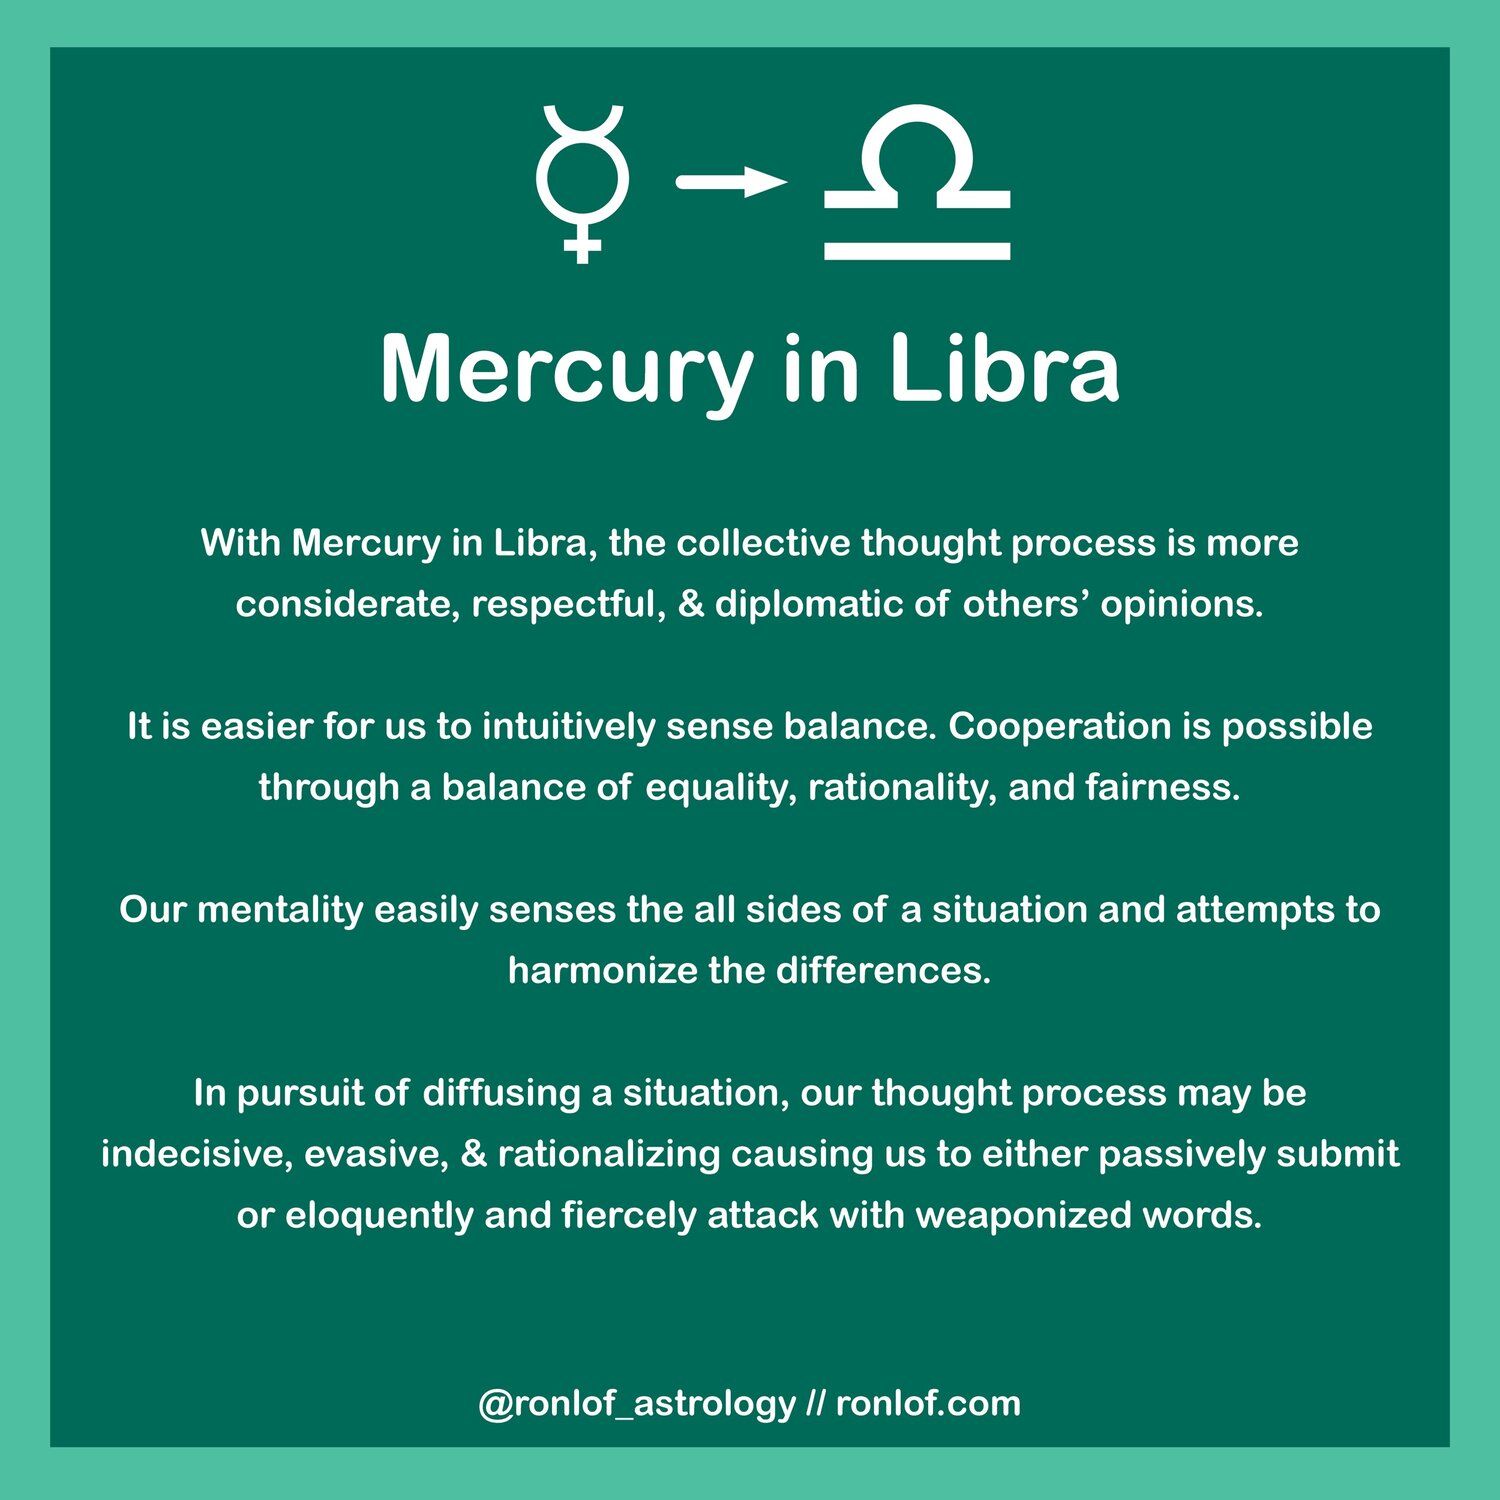  Znaczenie i cechy osobowości Merkurego w Wadze